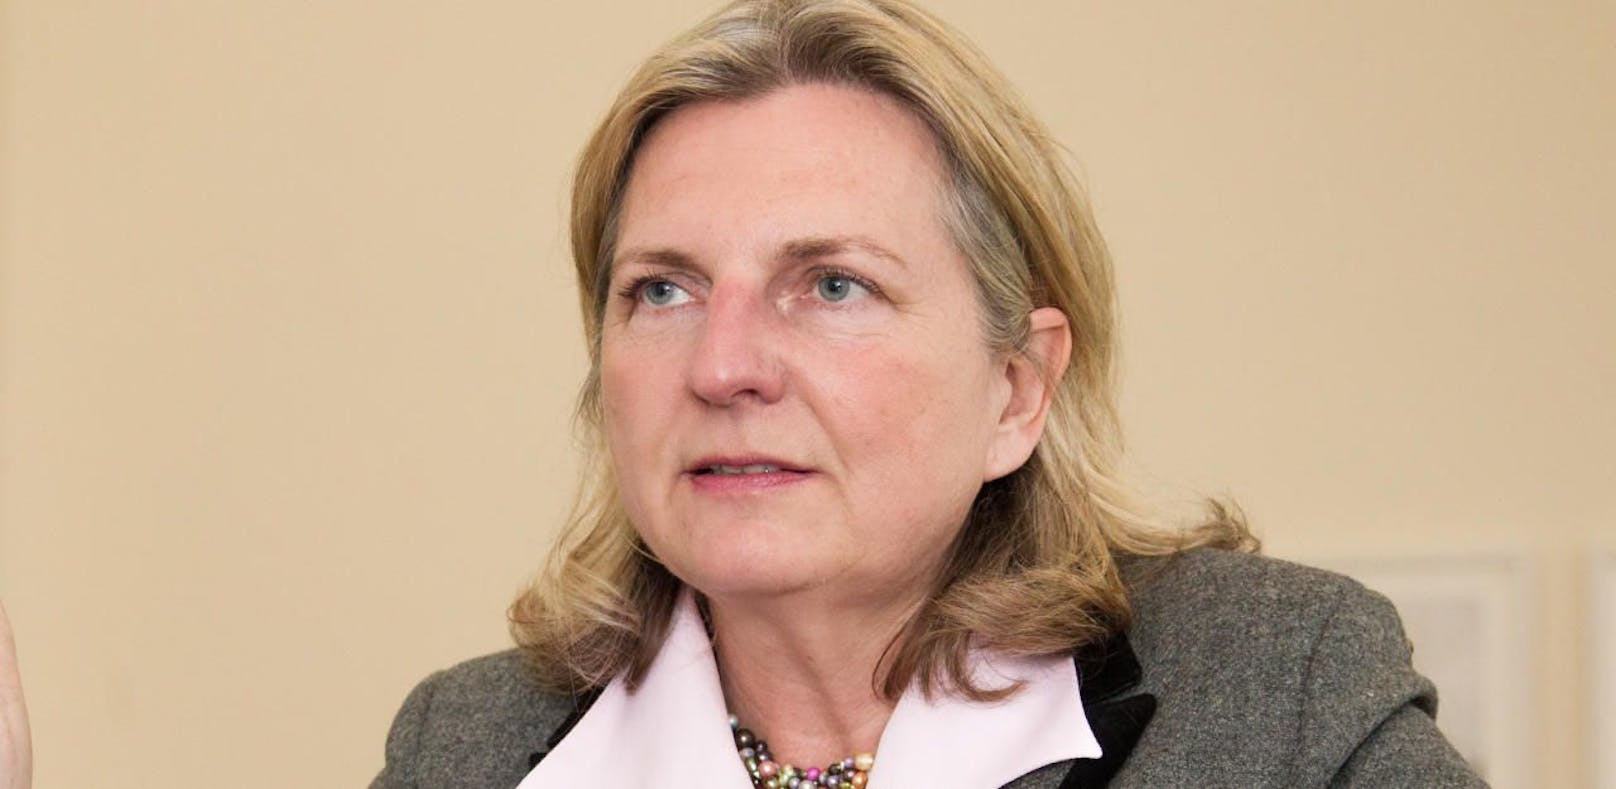 Karin Kneissl (FPÖ) fällt doch noch eine Woche aus.